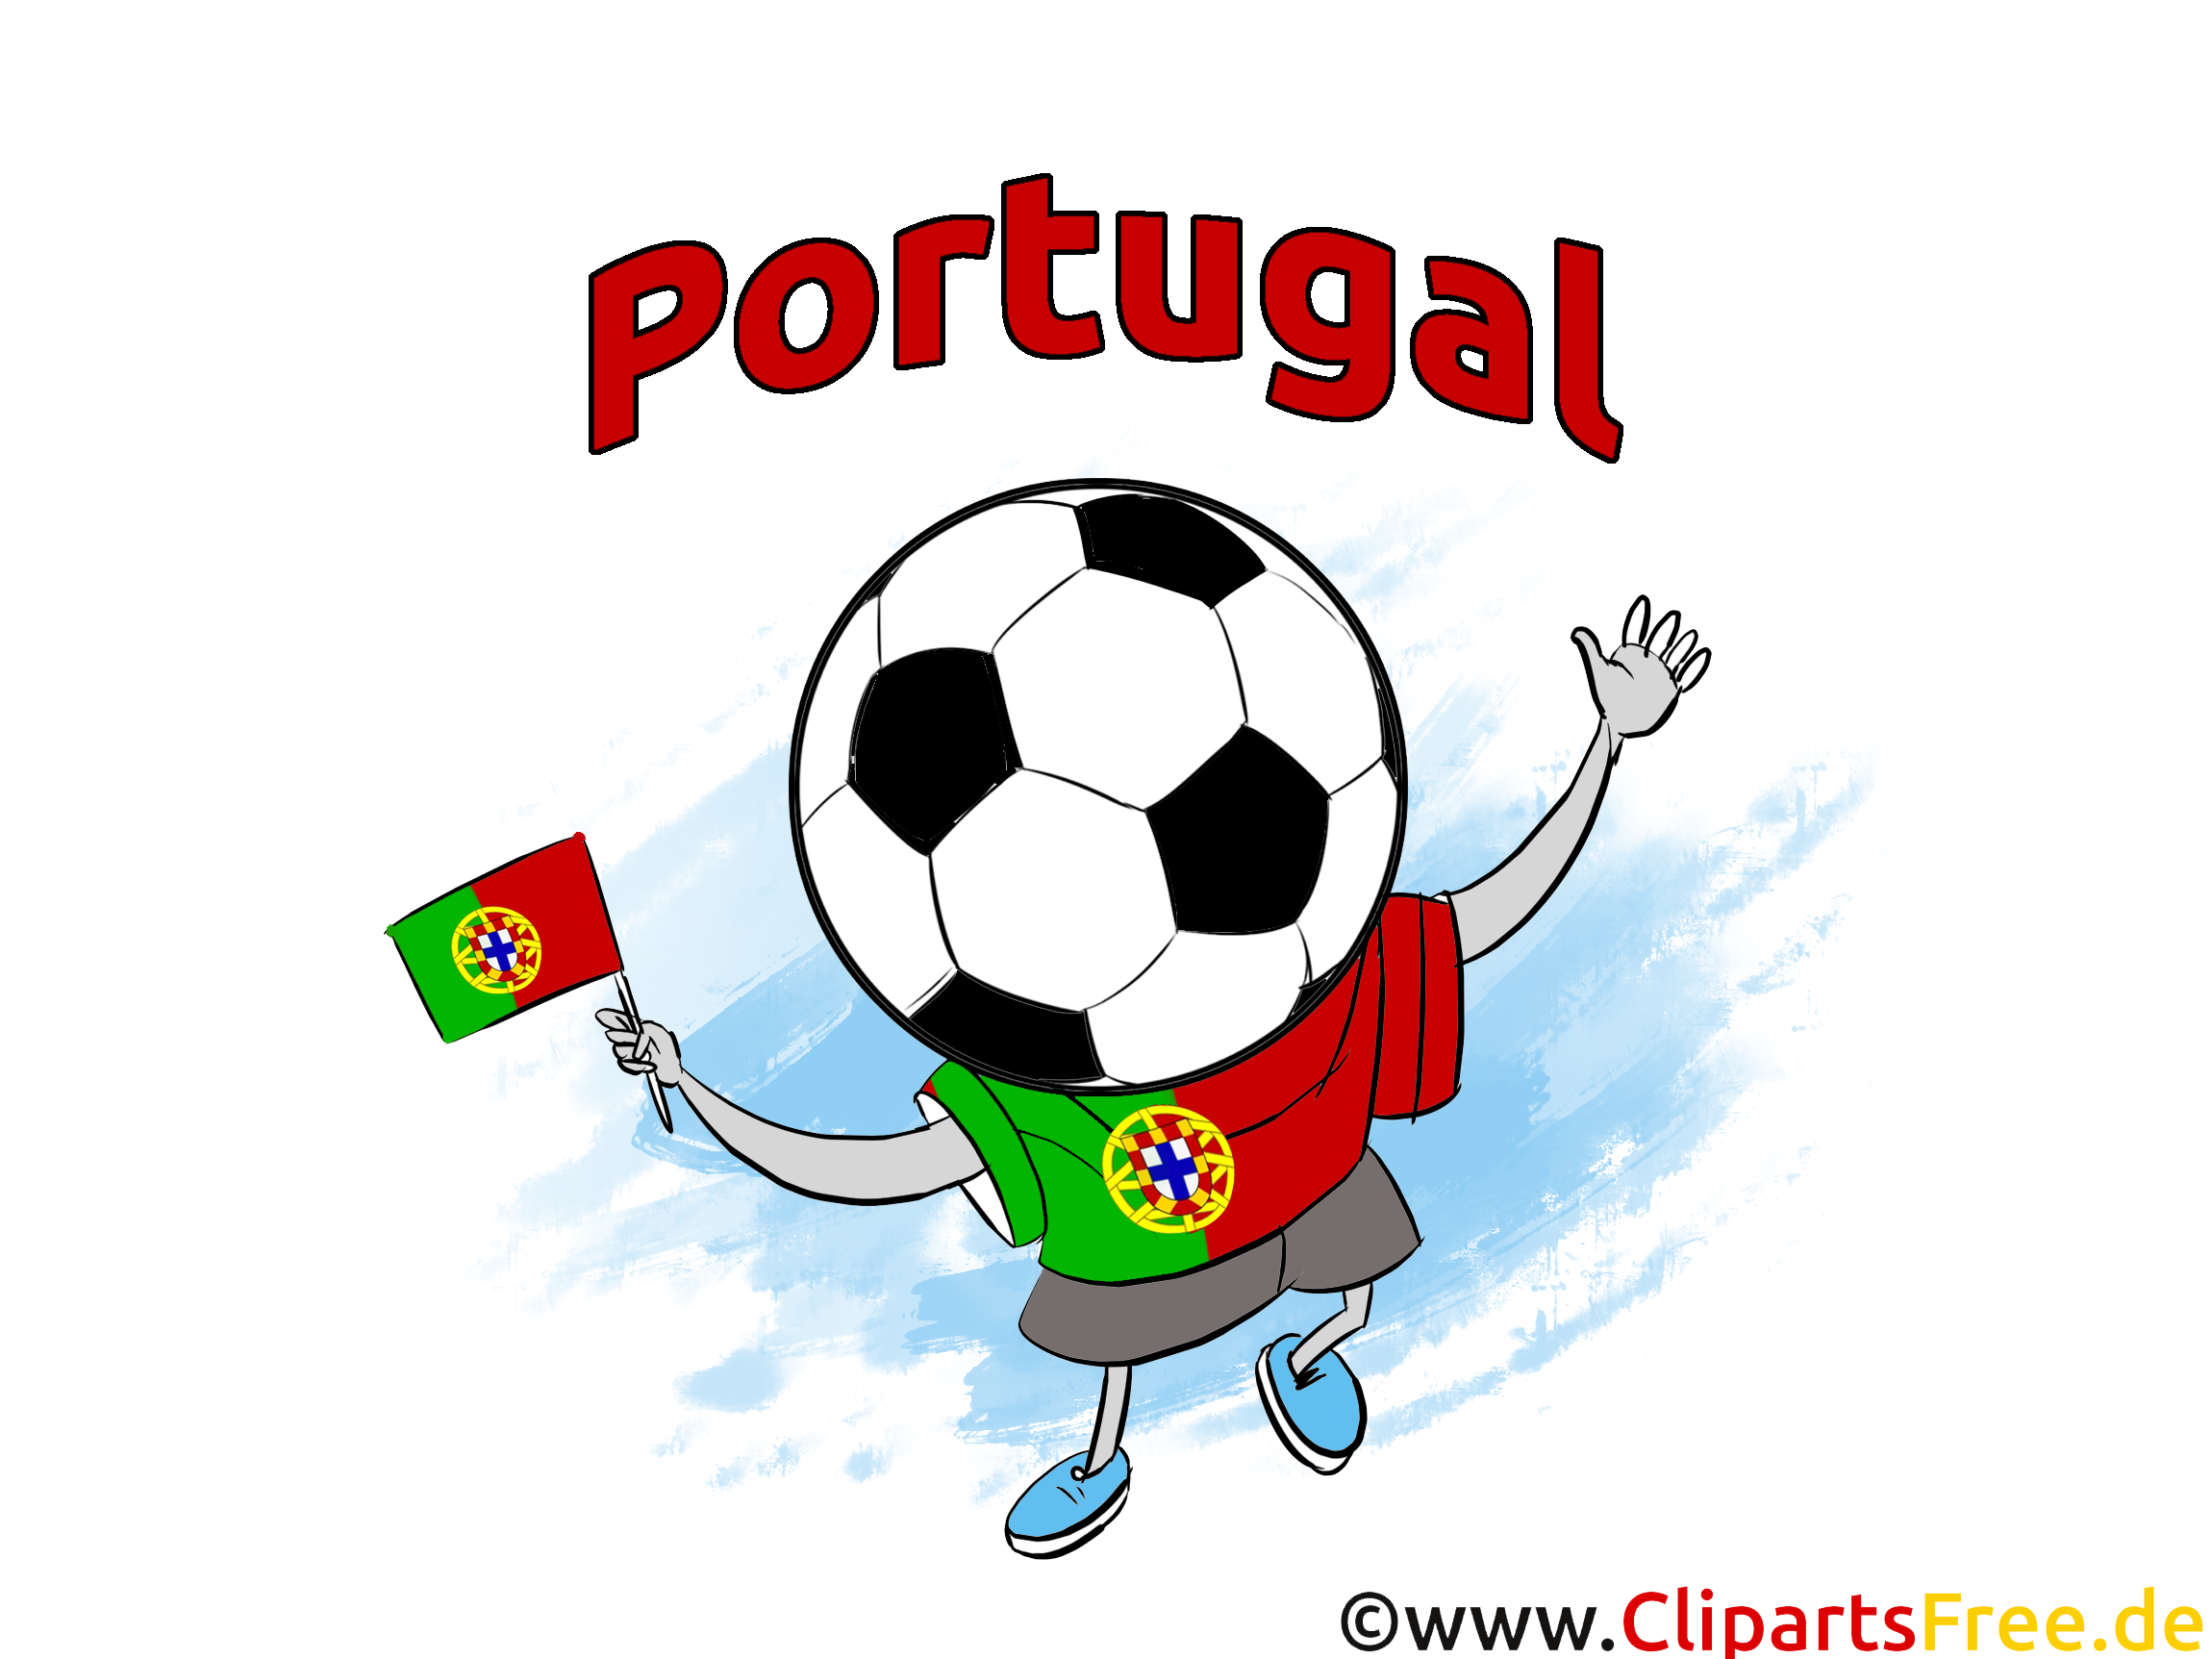 Télécharger pour Portugal gratuit Images Soccer